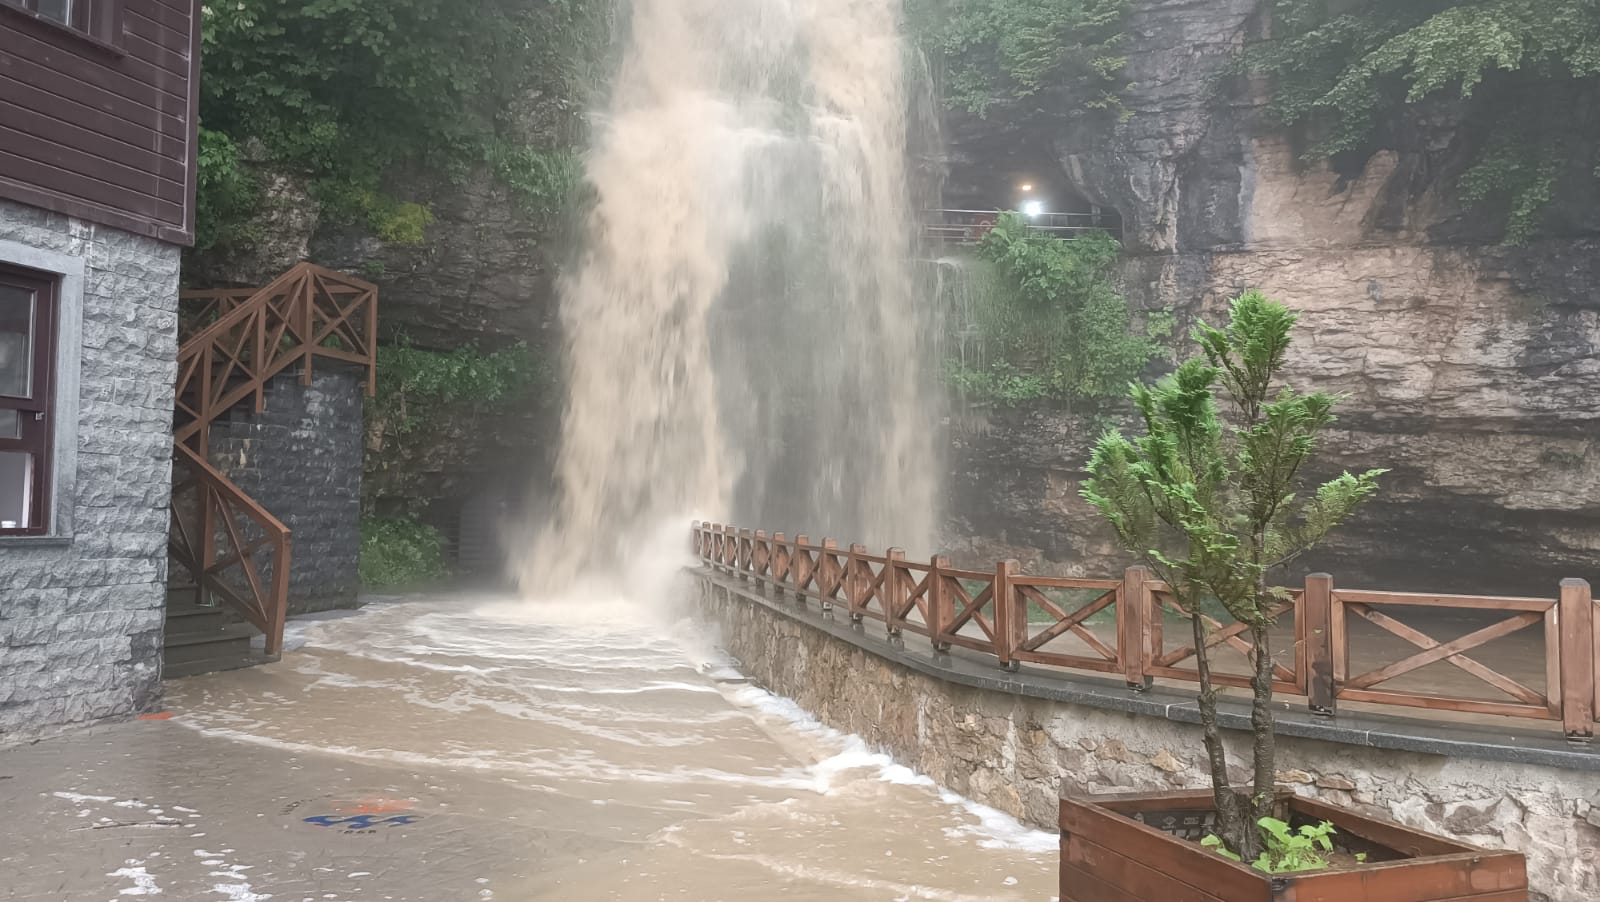 Trabzon Çal Mağarası’na giriş, debisi yükselen şelale nedeniyle kapatıldı